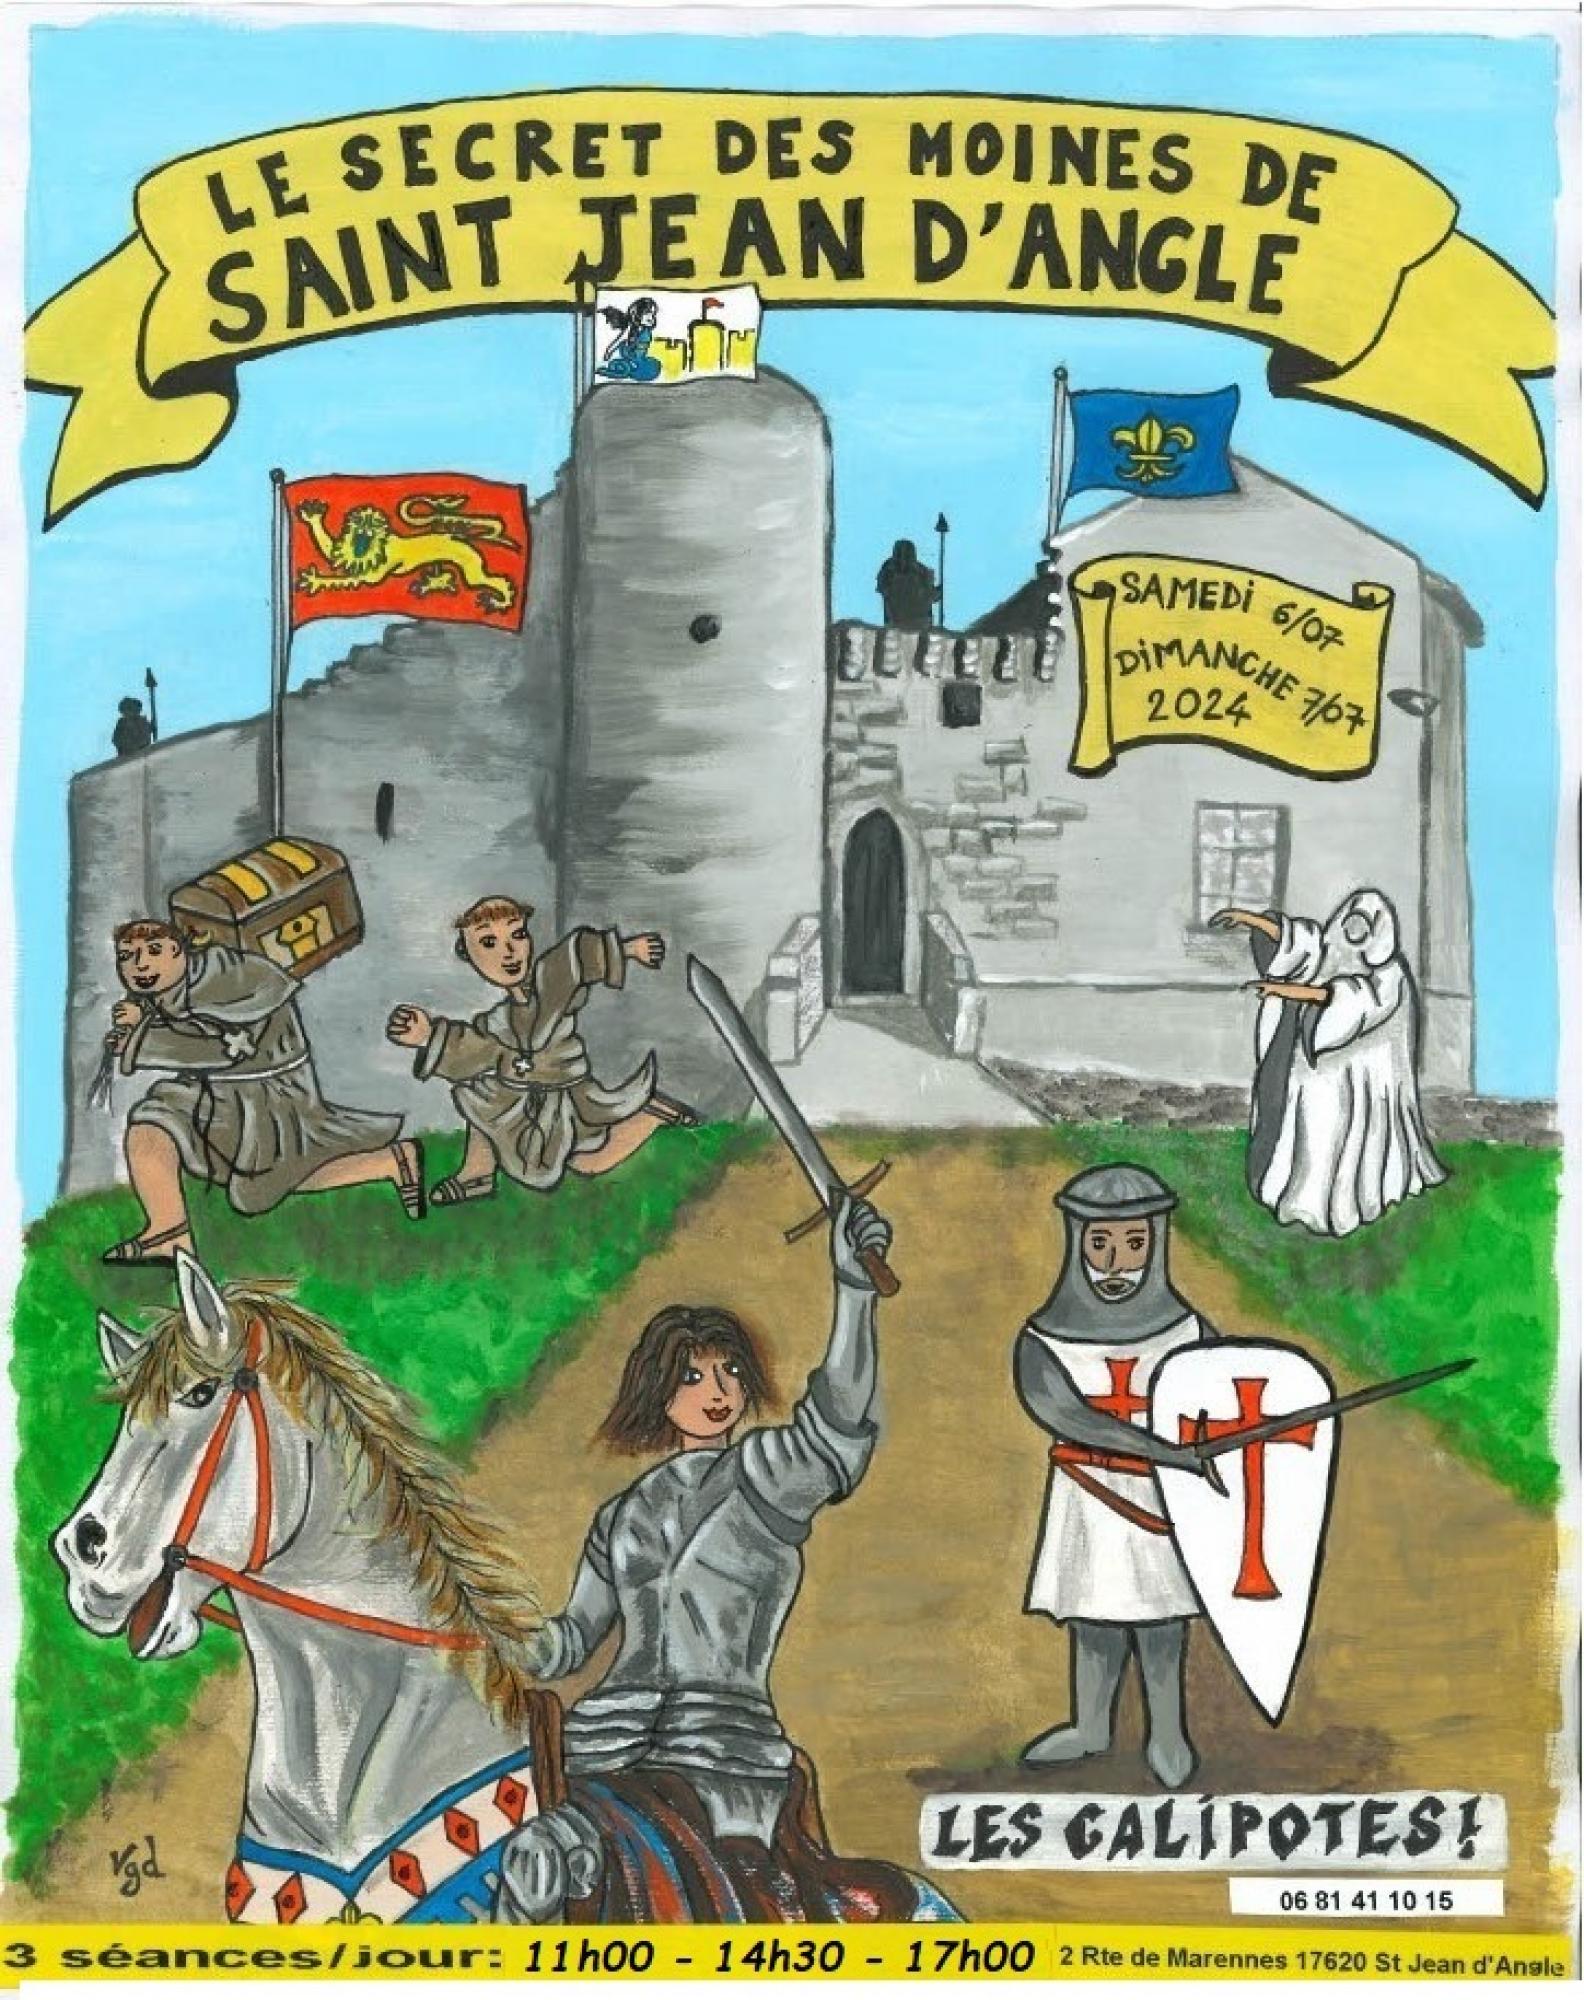 Site en scène: Le secret des moines de Saint Jean d'Angle au château de la fée Mélusine